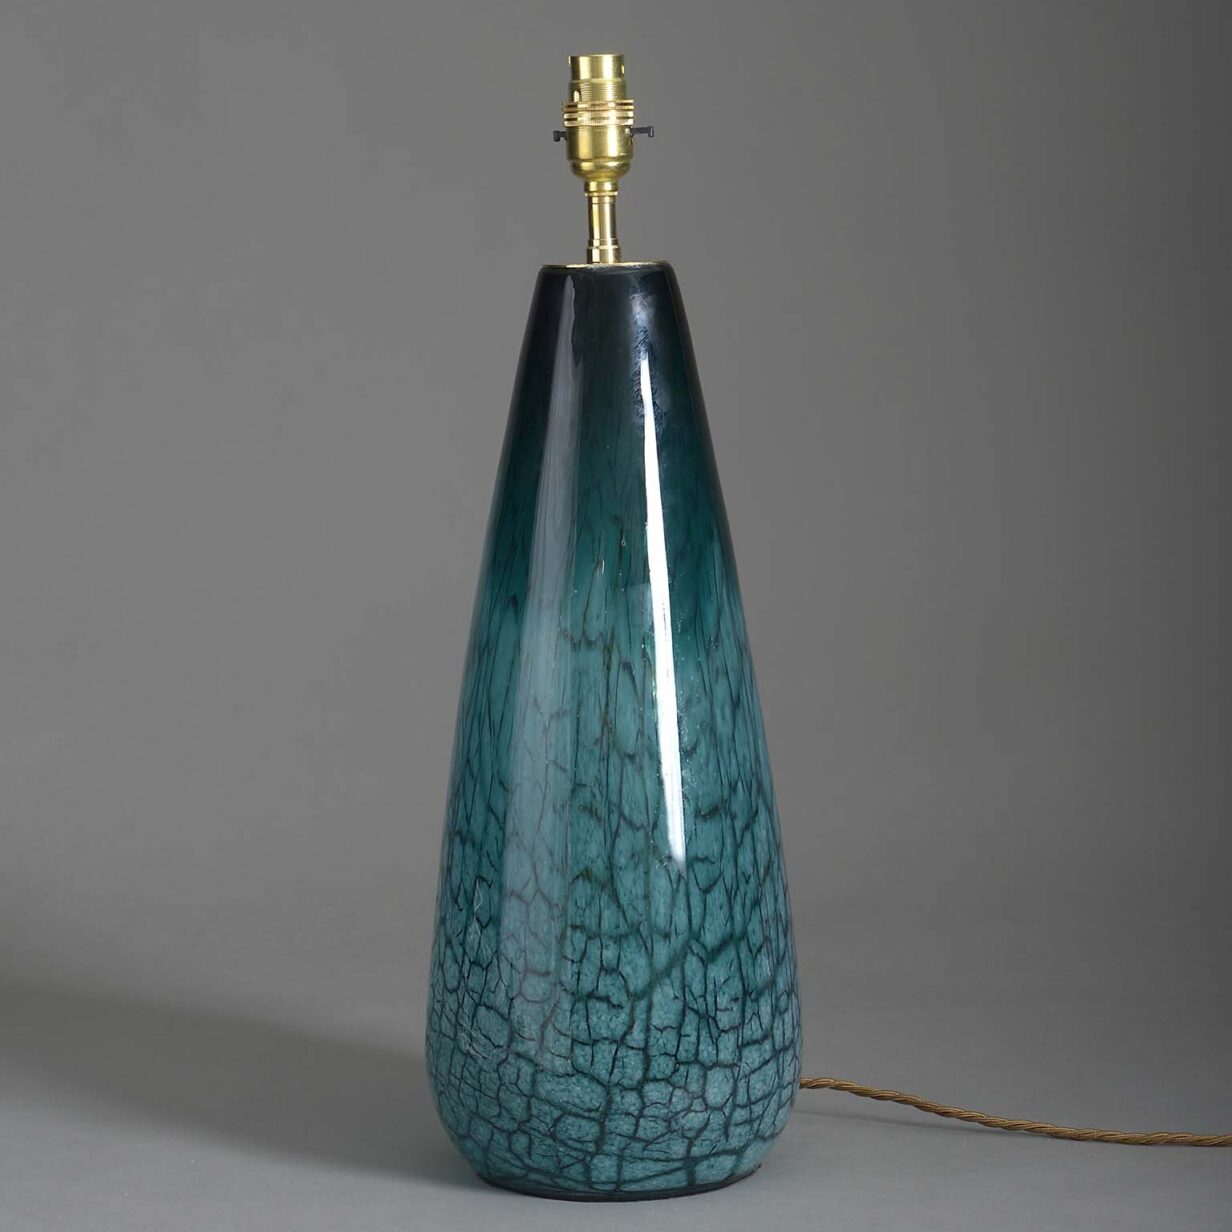 Green glass vase lamp